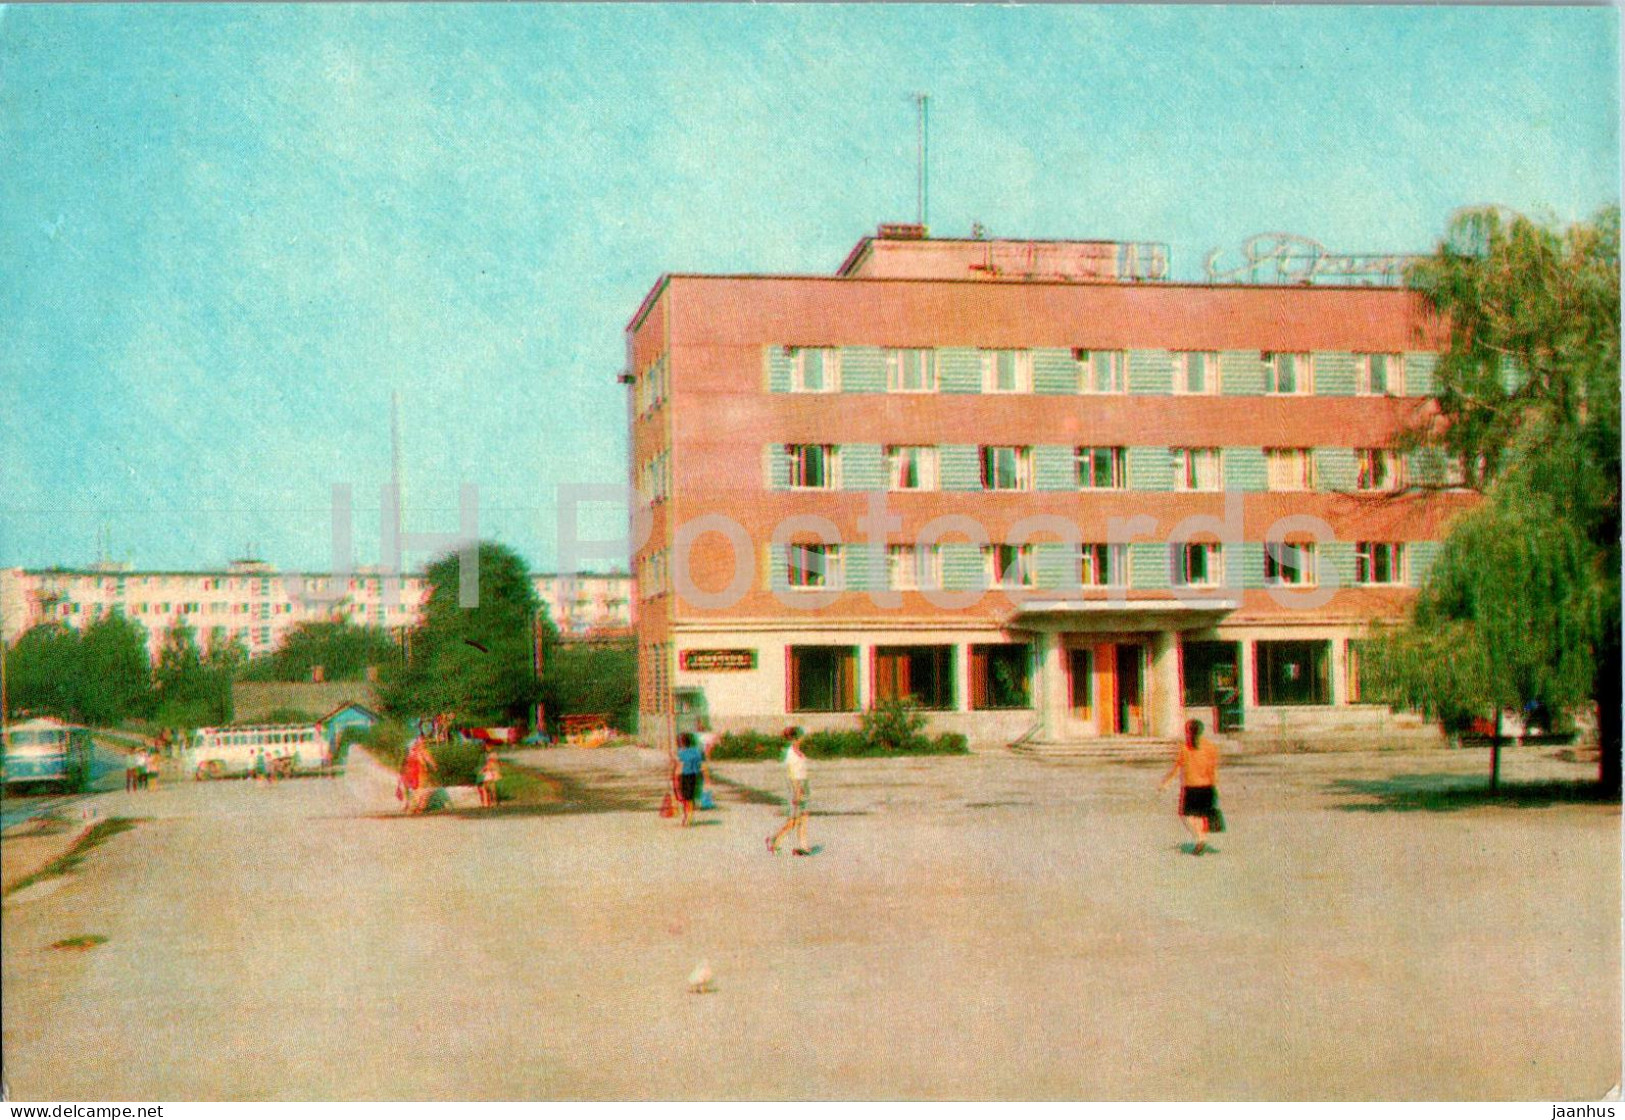 Kalush - Hotel - 1973 - Ukraine USSR - Unused - Ukraine